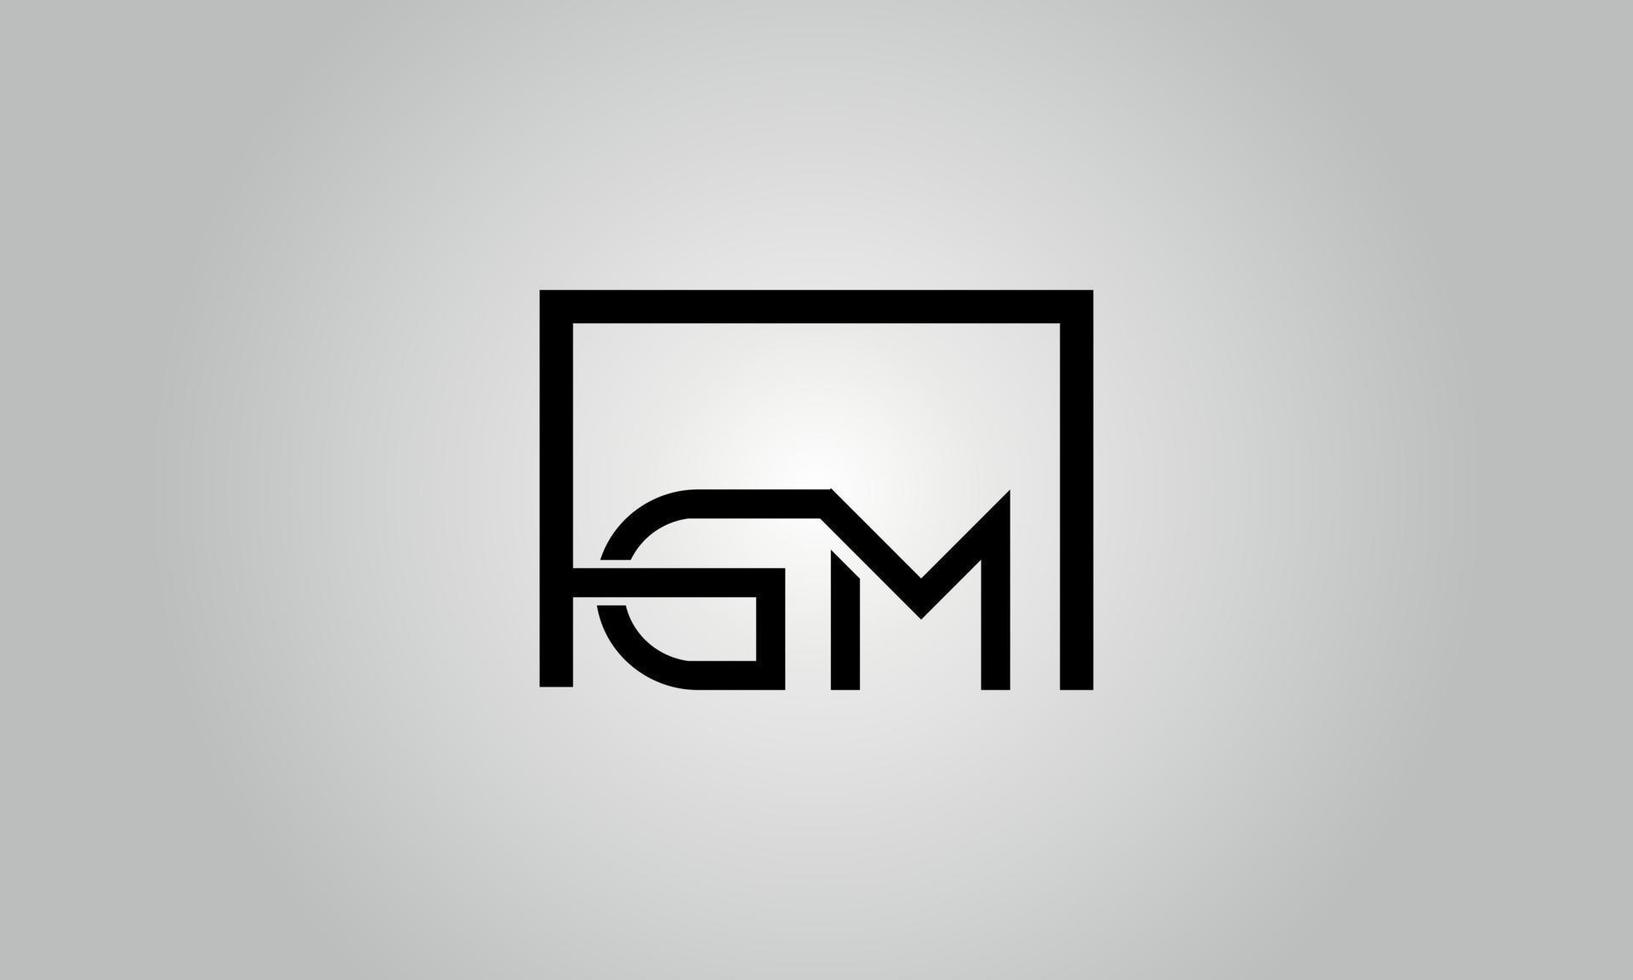 design de logotipo carta gm. gm logotipo com forma quadrada em cores pretas modelo de vetor livre.